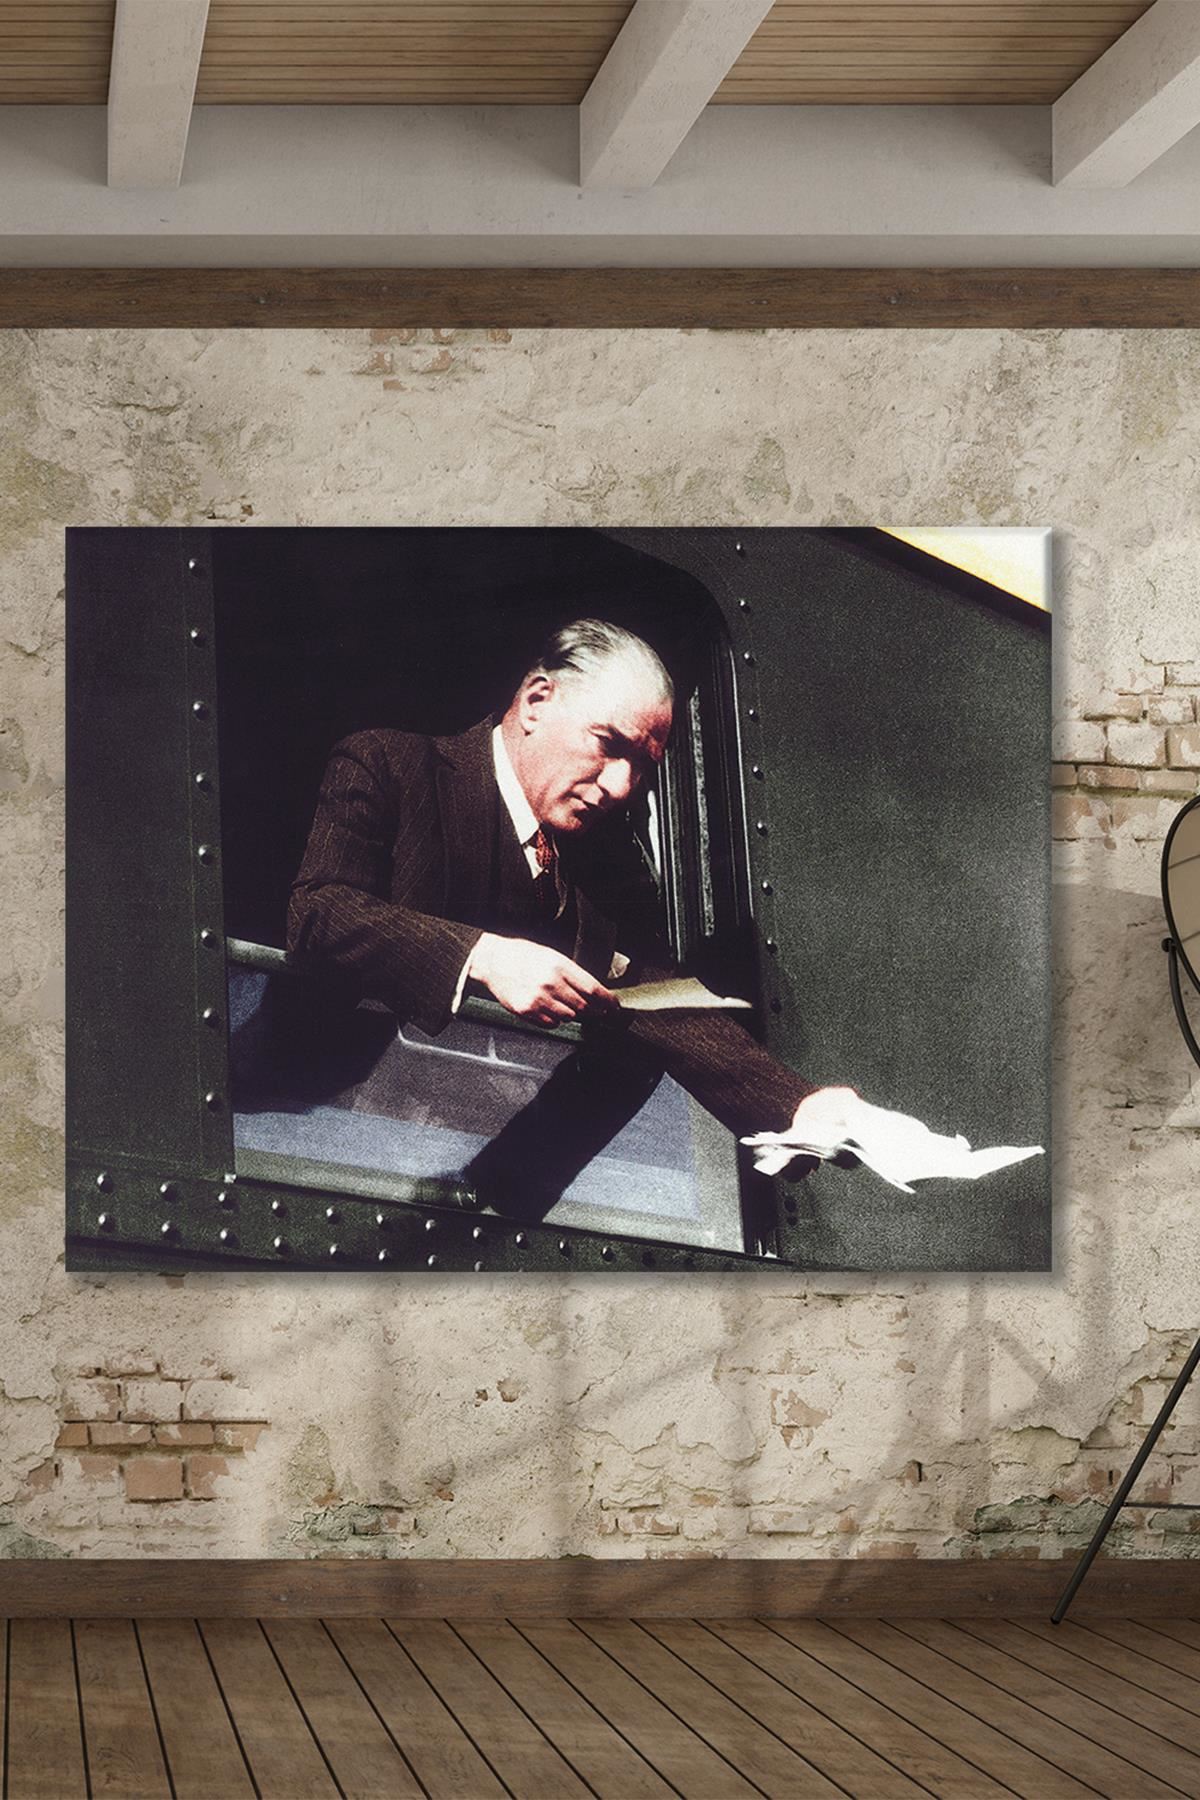 Atatürk İstanbul'a Giderken Vatandaşın Dilekçesini Kabul Ederken Kanvas Duvar Tablo 221497